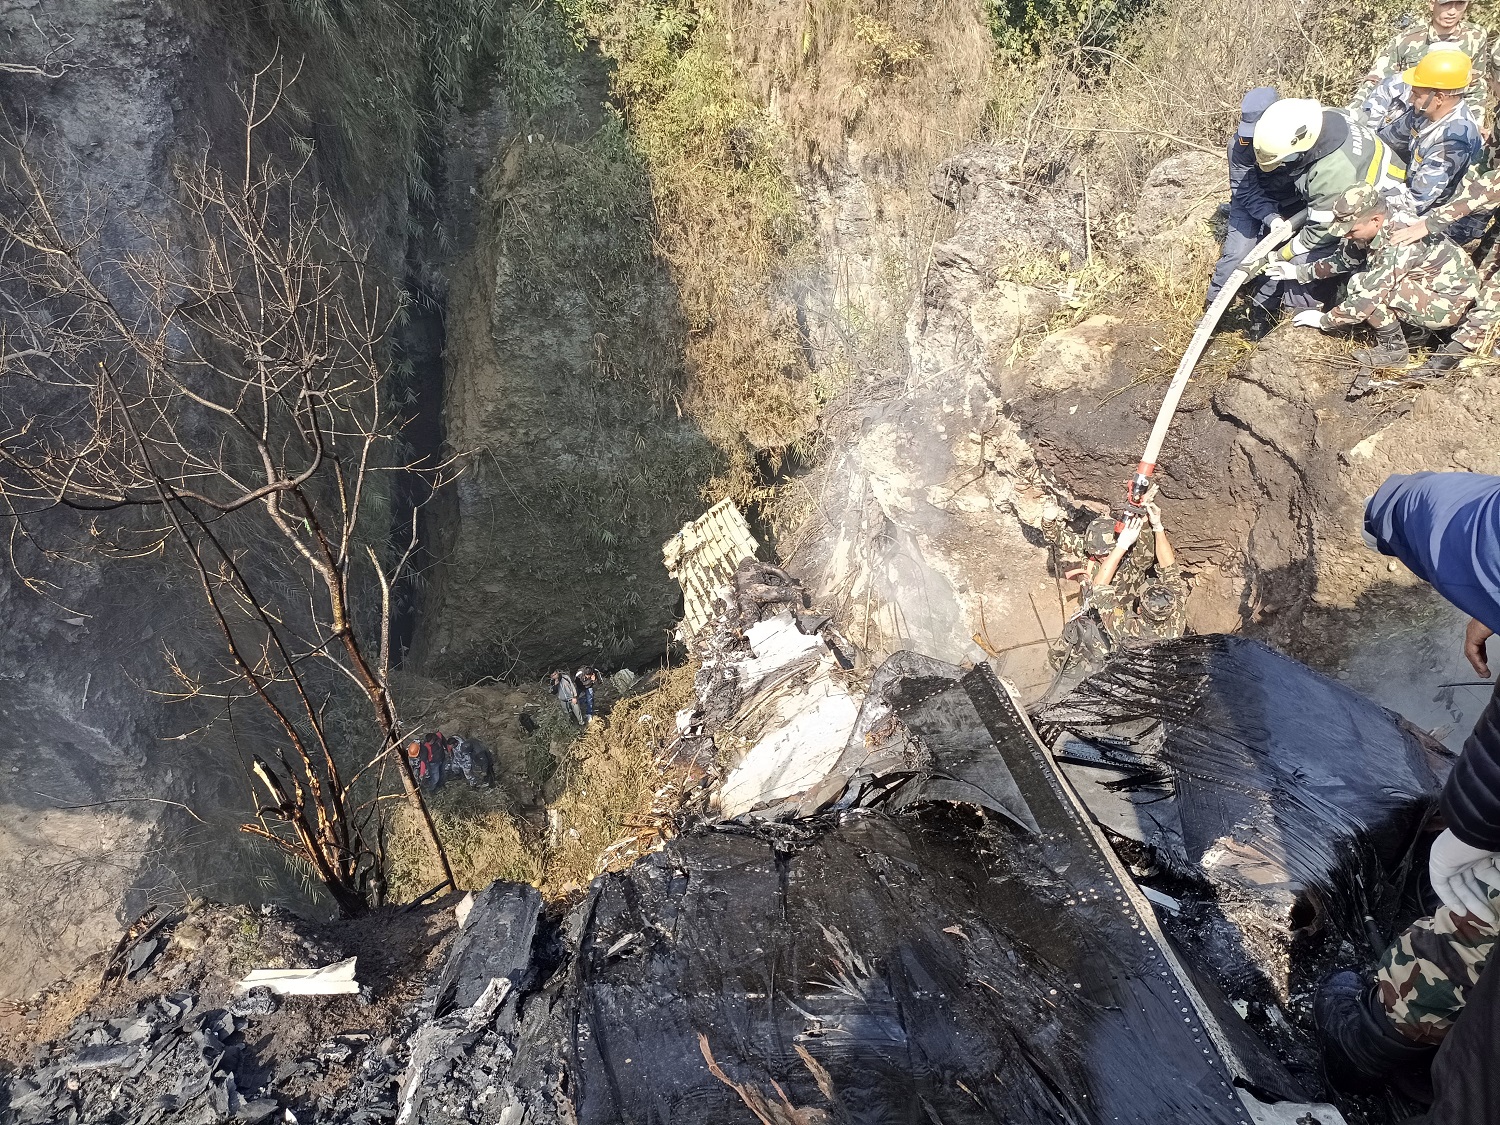 पोखरा विमान दुर्घटना : शोकमा डुब्यो पर्वत